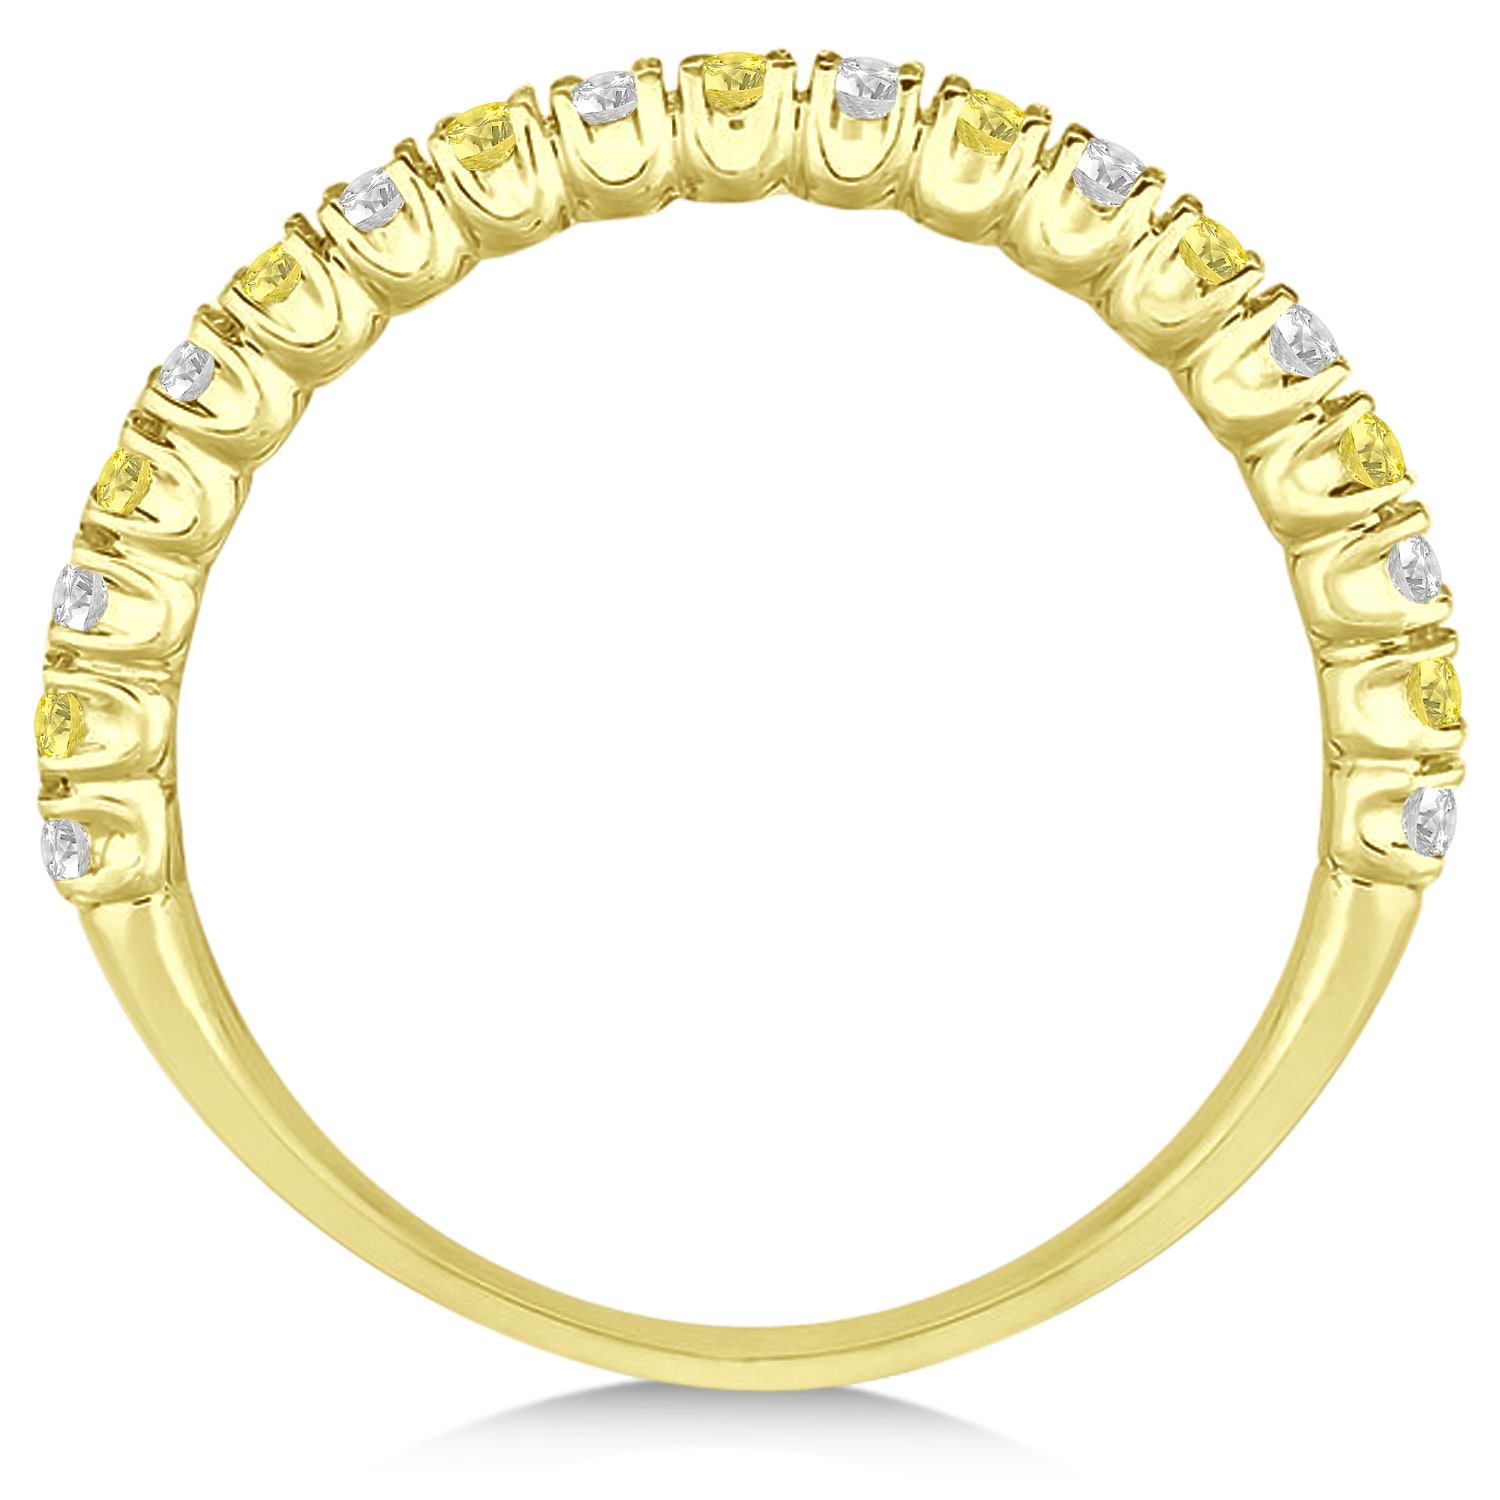 Yellow & White Diamond Wedding Band Anniversary Ring in 14k Yellow Gold (0.50ct)